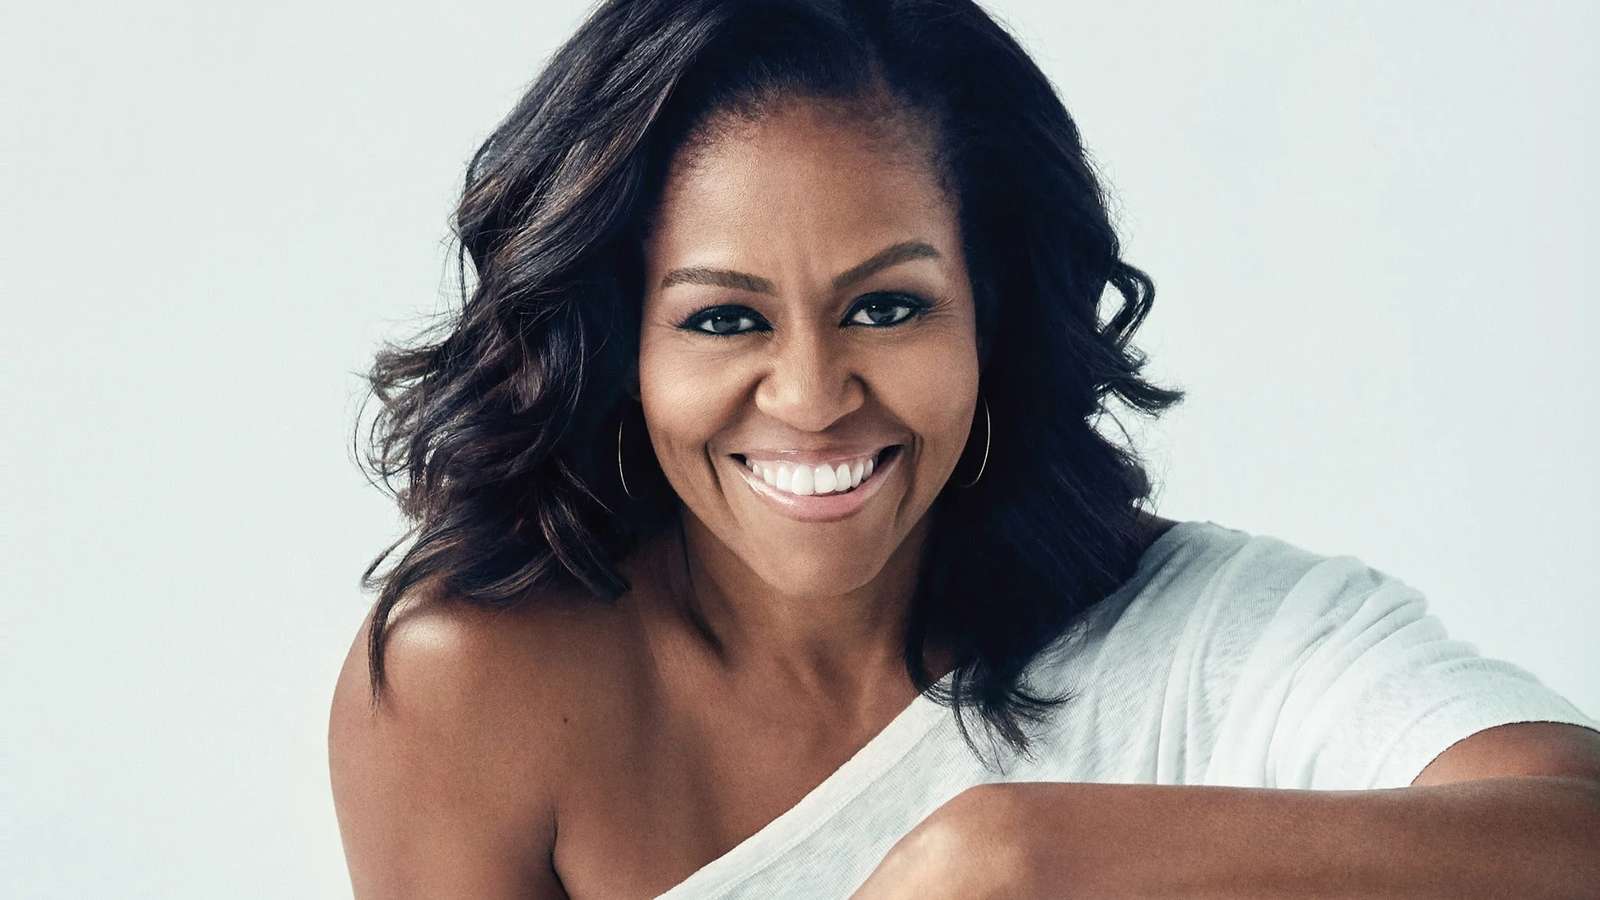 Peças inspiradoras: quebra-cabeça de Michelle Obama puzzle online a partir de fotografia